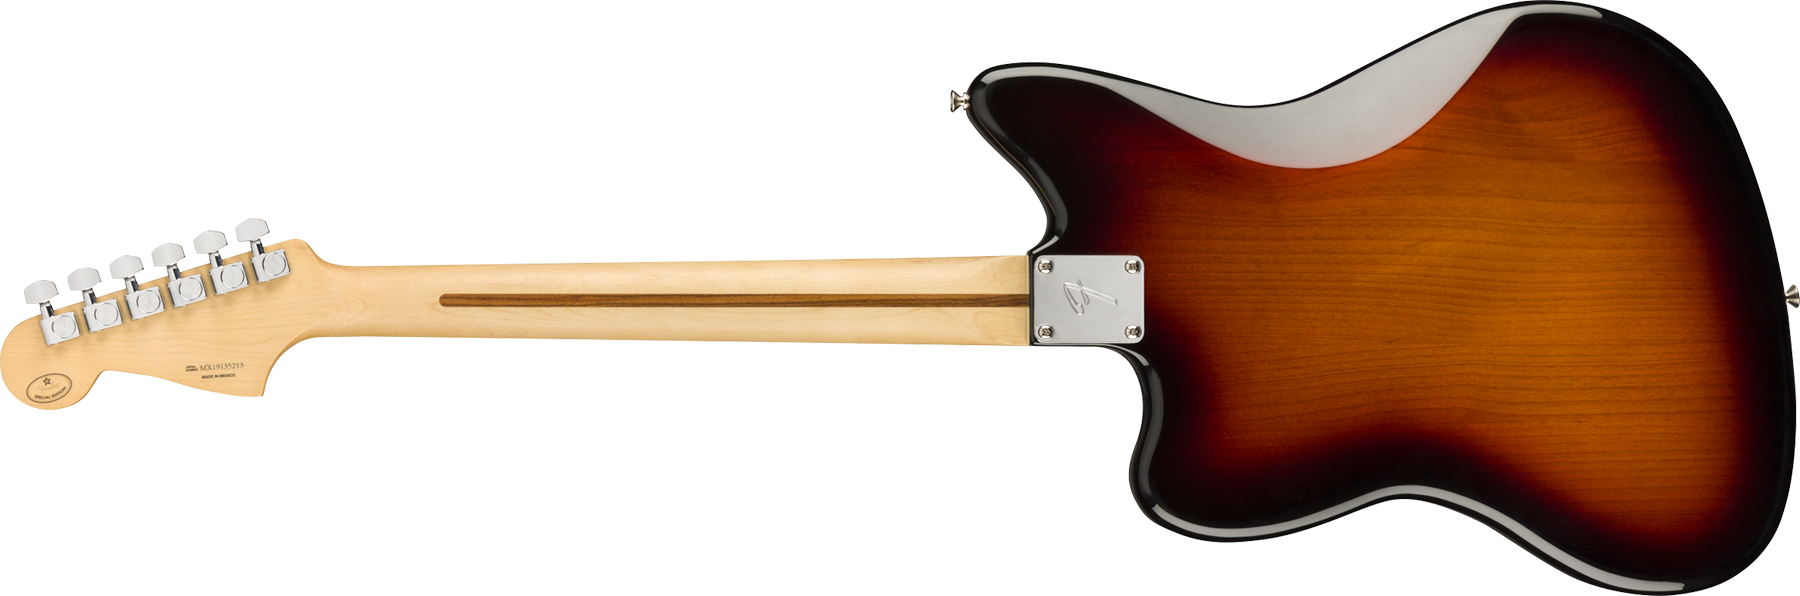 Fender Jazzmaster Player Ltd 2s Trem Pf - 3-color Sunburst - Retro rock electric guitar - Variation 1